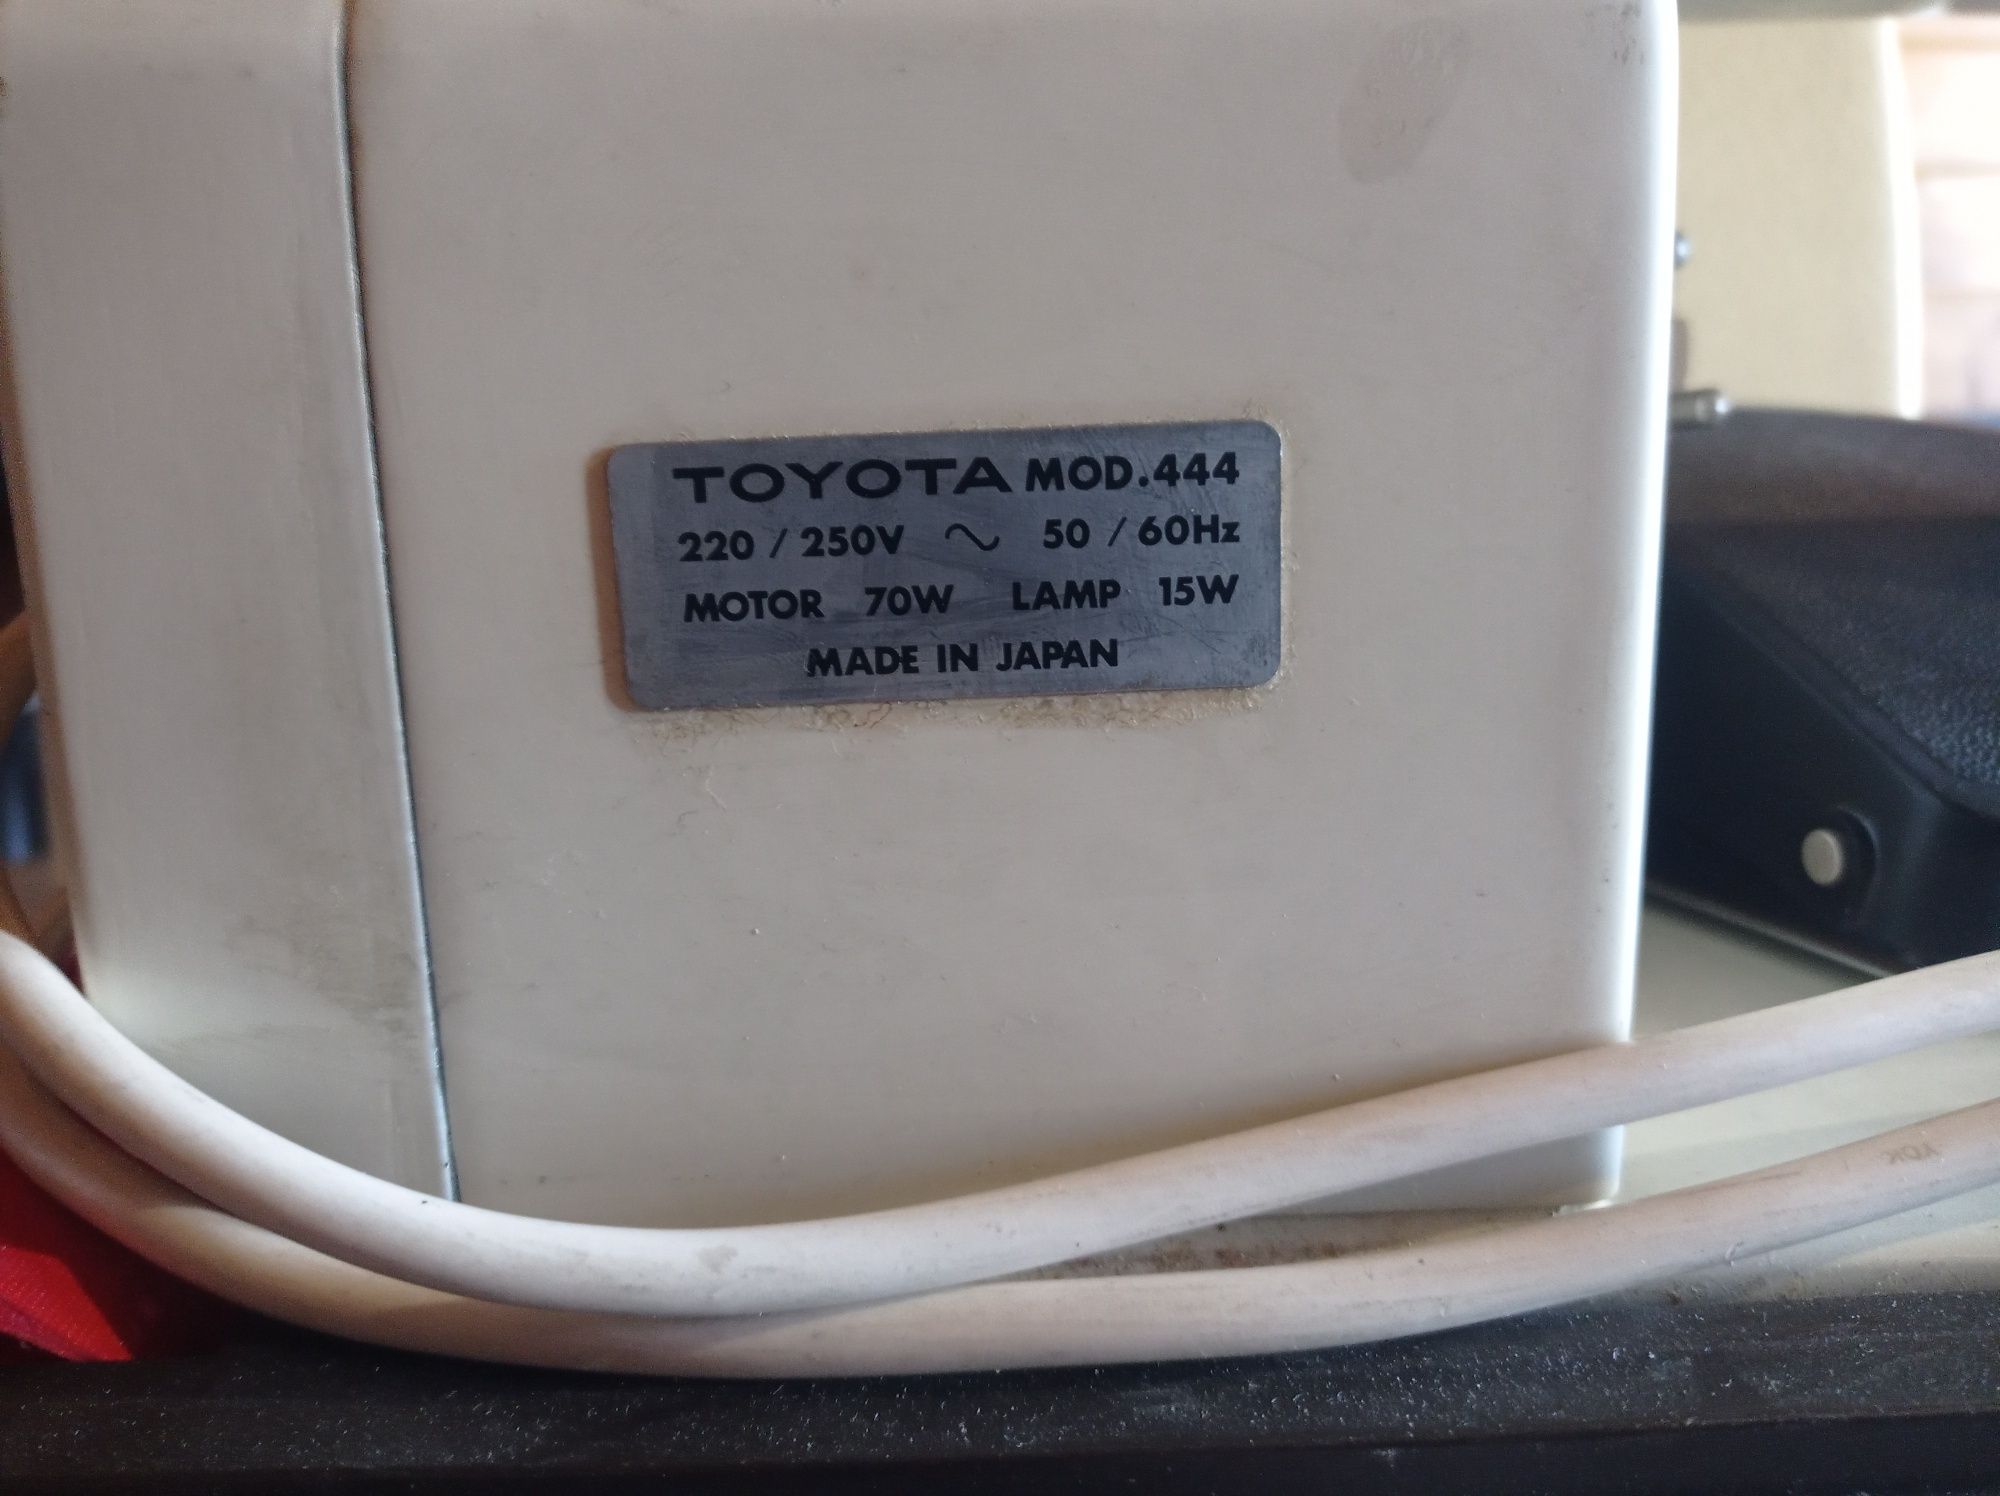 Швейная машинка Toyota